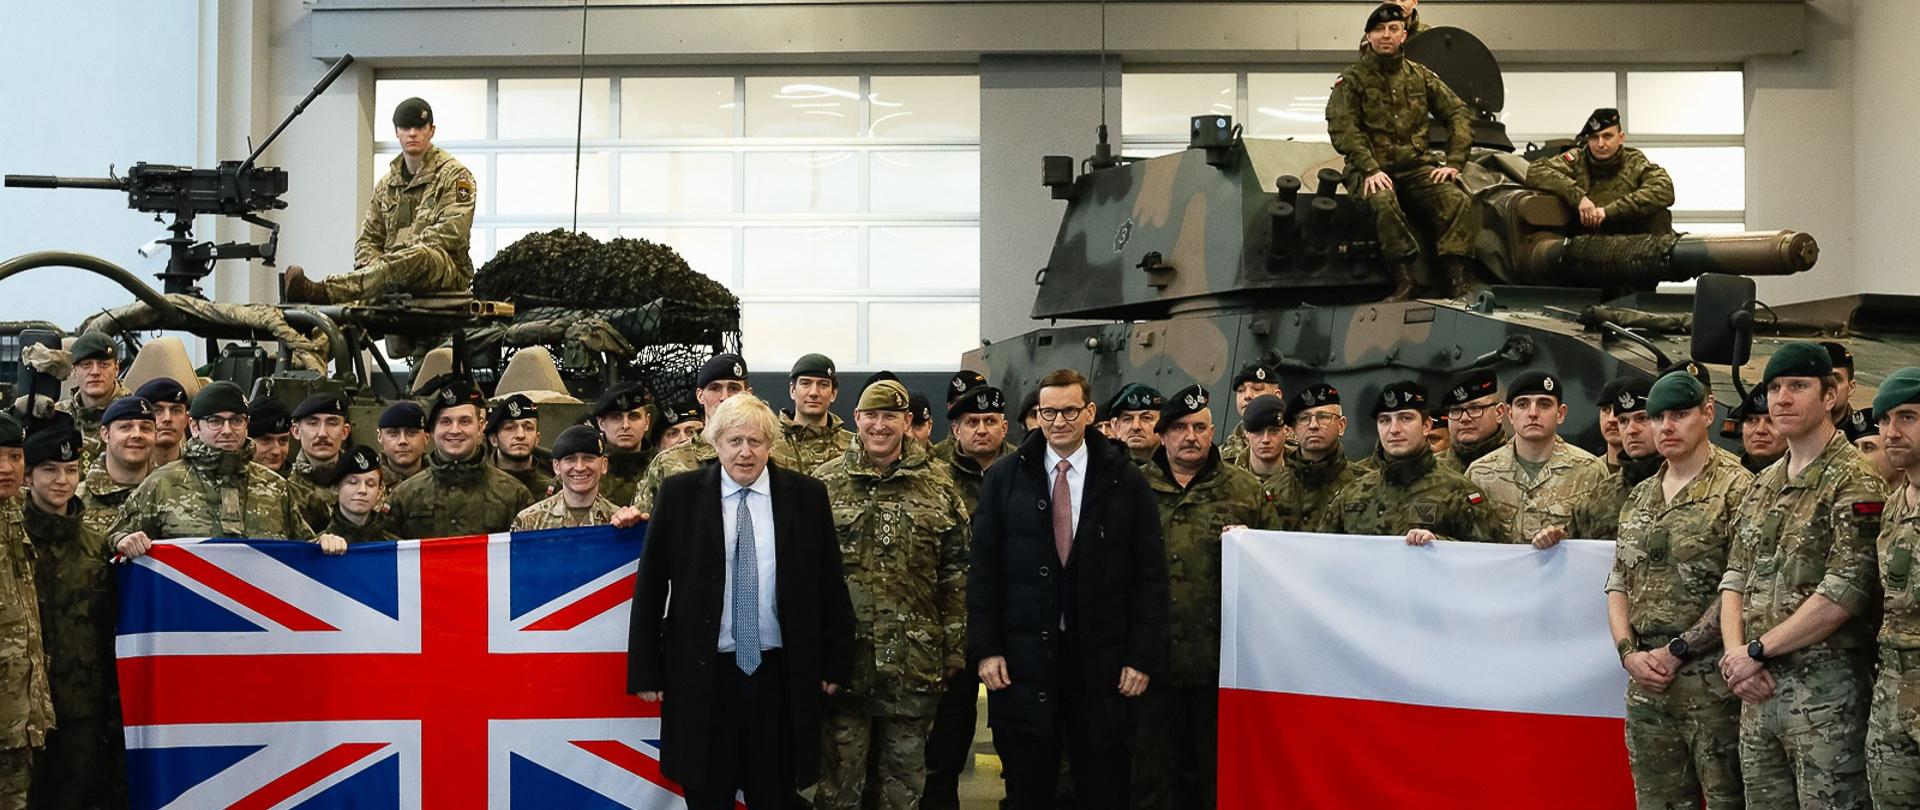 Wspólne zdjęcie premiera Mateusza Morawieckiego i Borisa Johnsona z żołnierzami.